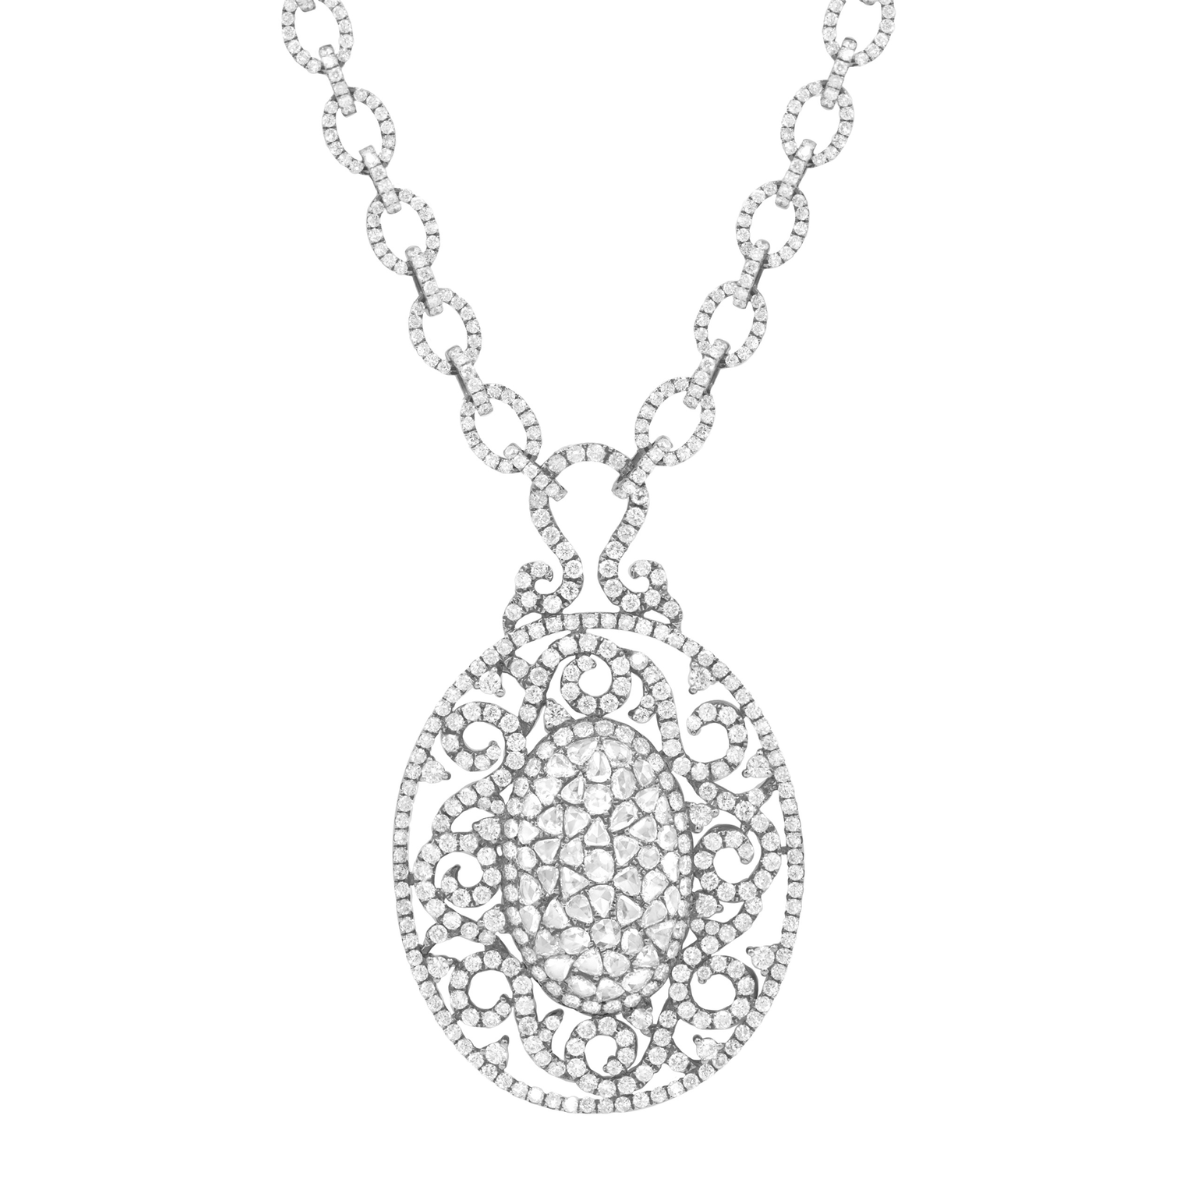 12ct Rose Cut Diamond Necklace